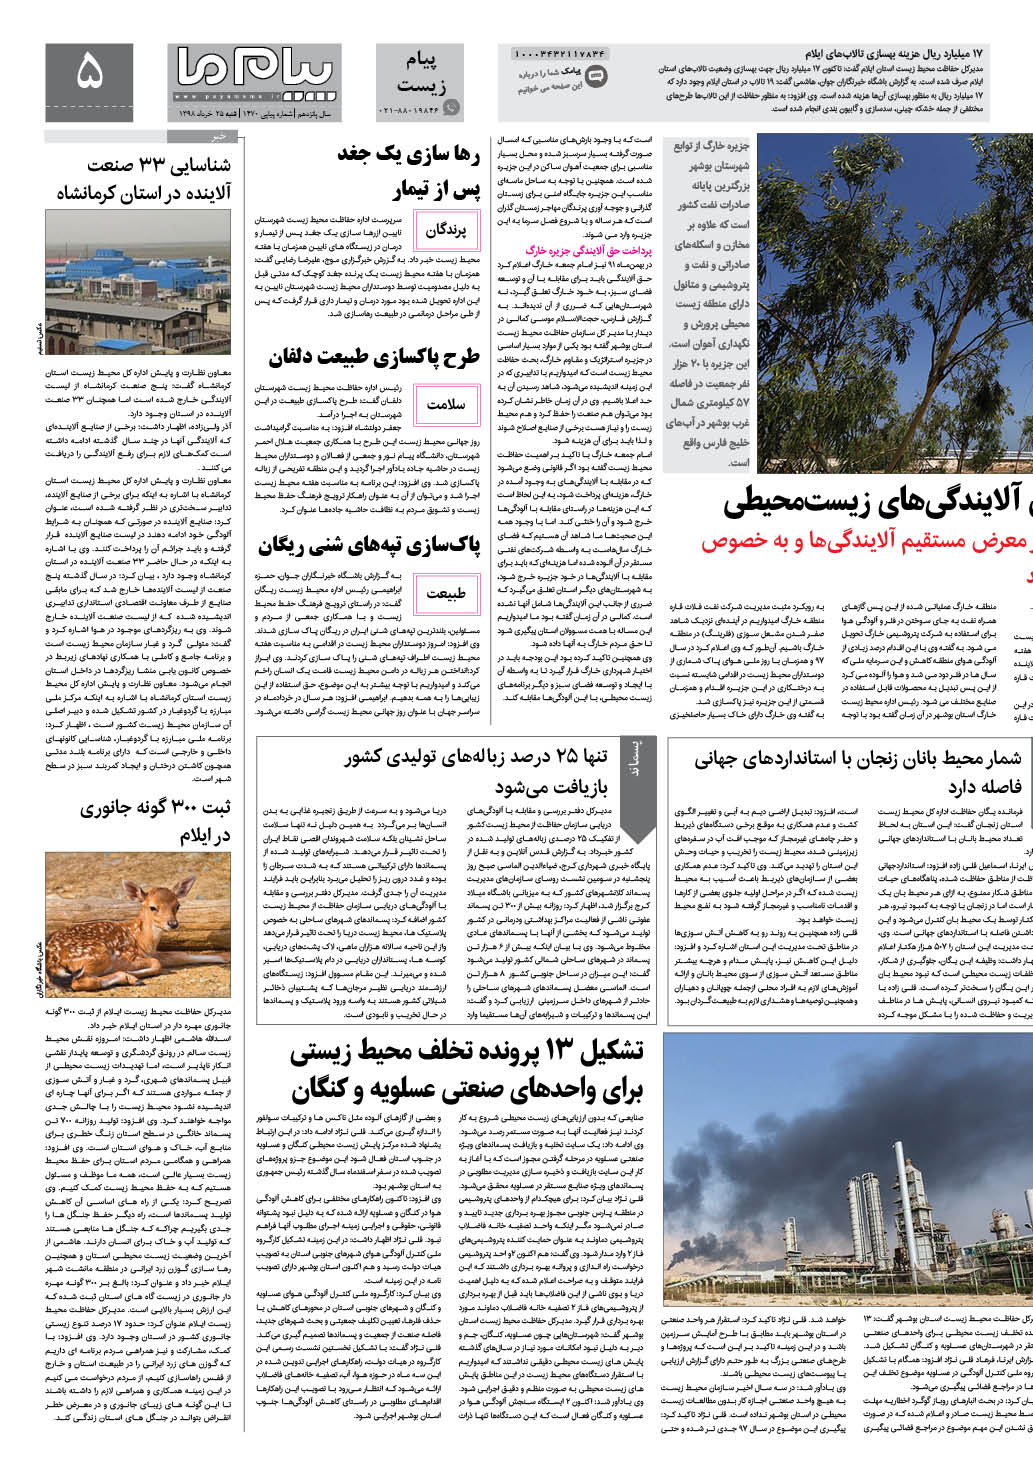 صفحه پیام زیست شماره 1470 روزنامه پیام ما